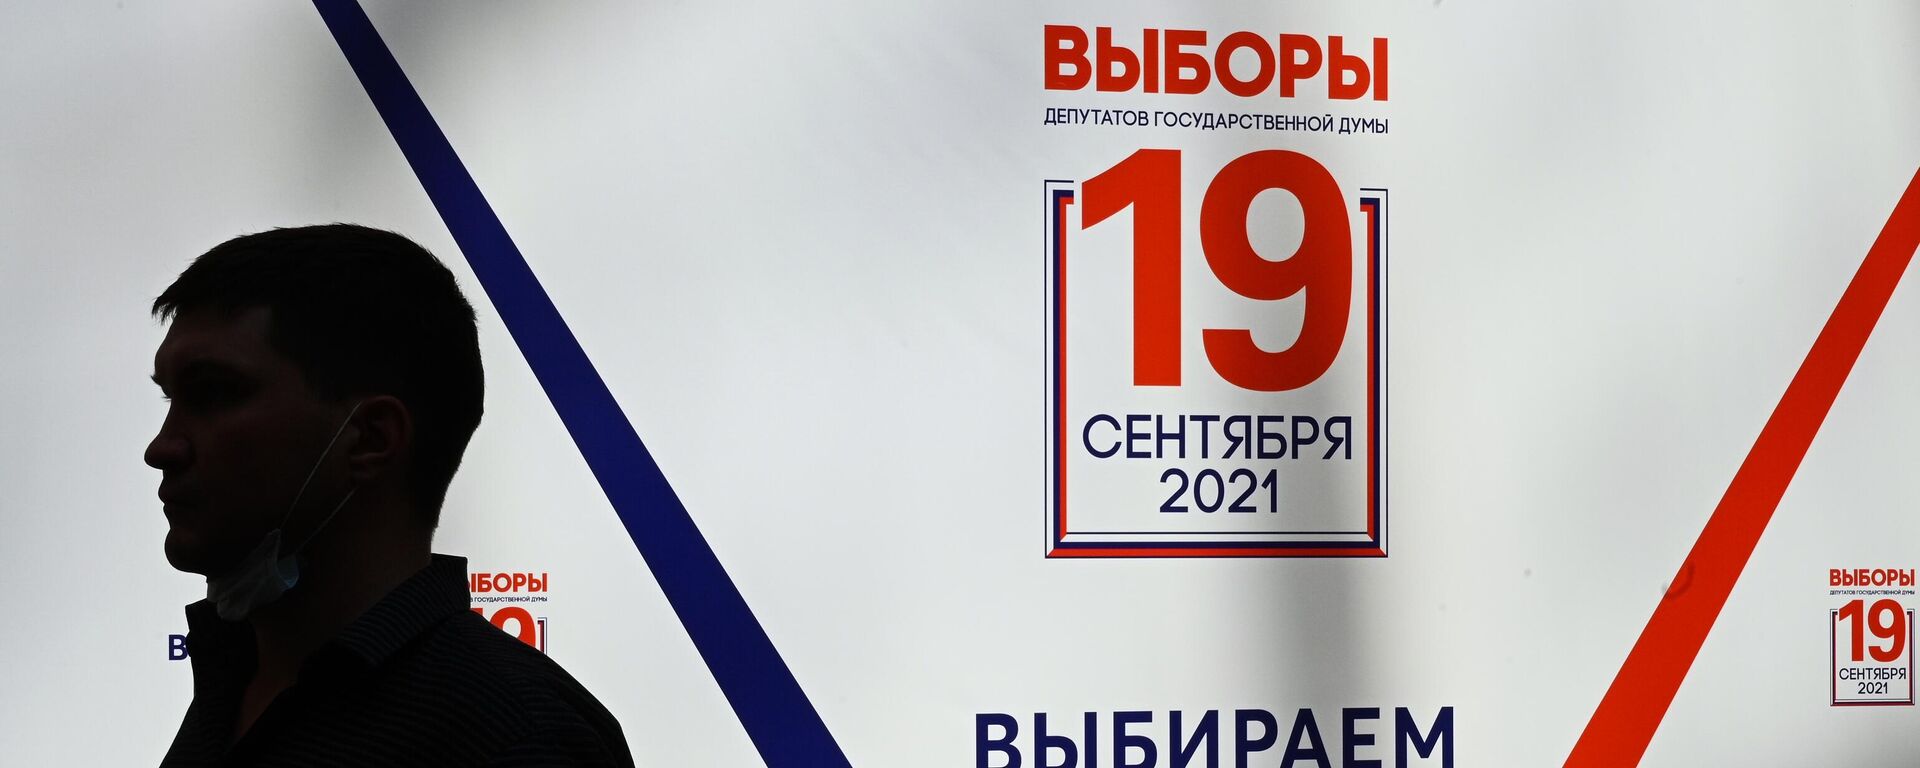 Предвыборный баннер у здания Центральной избирательной комиссии РФ в Москве - Sputnik Узбекистан, 1920, 16.09.2021